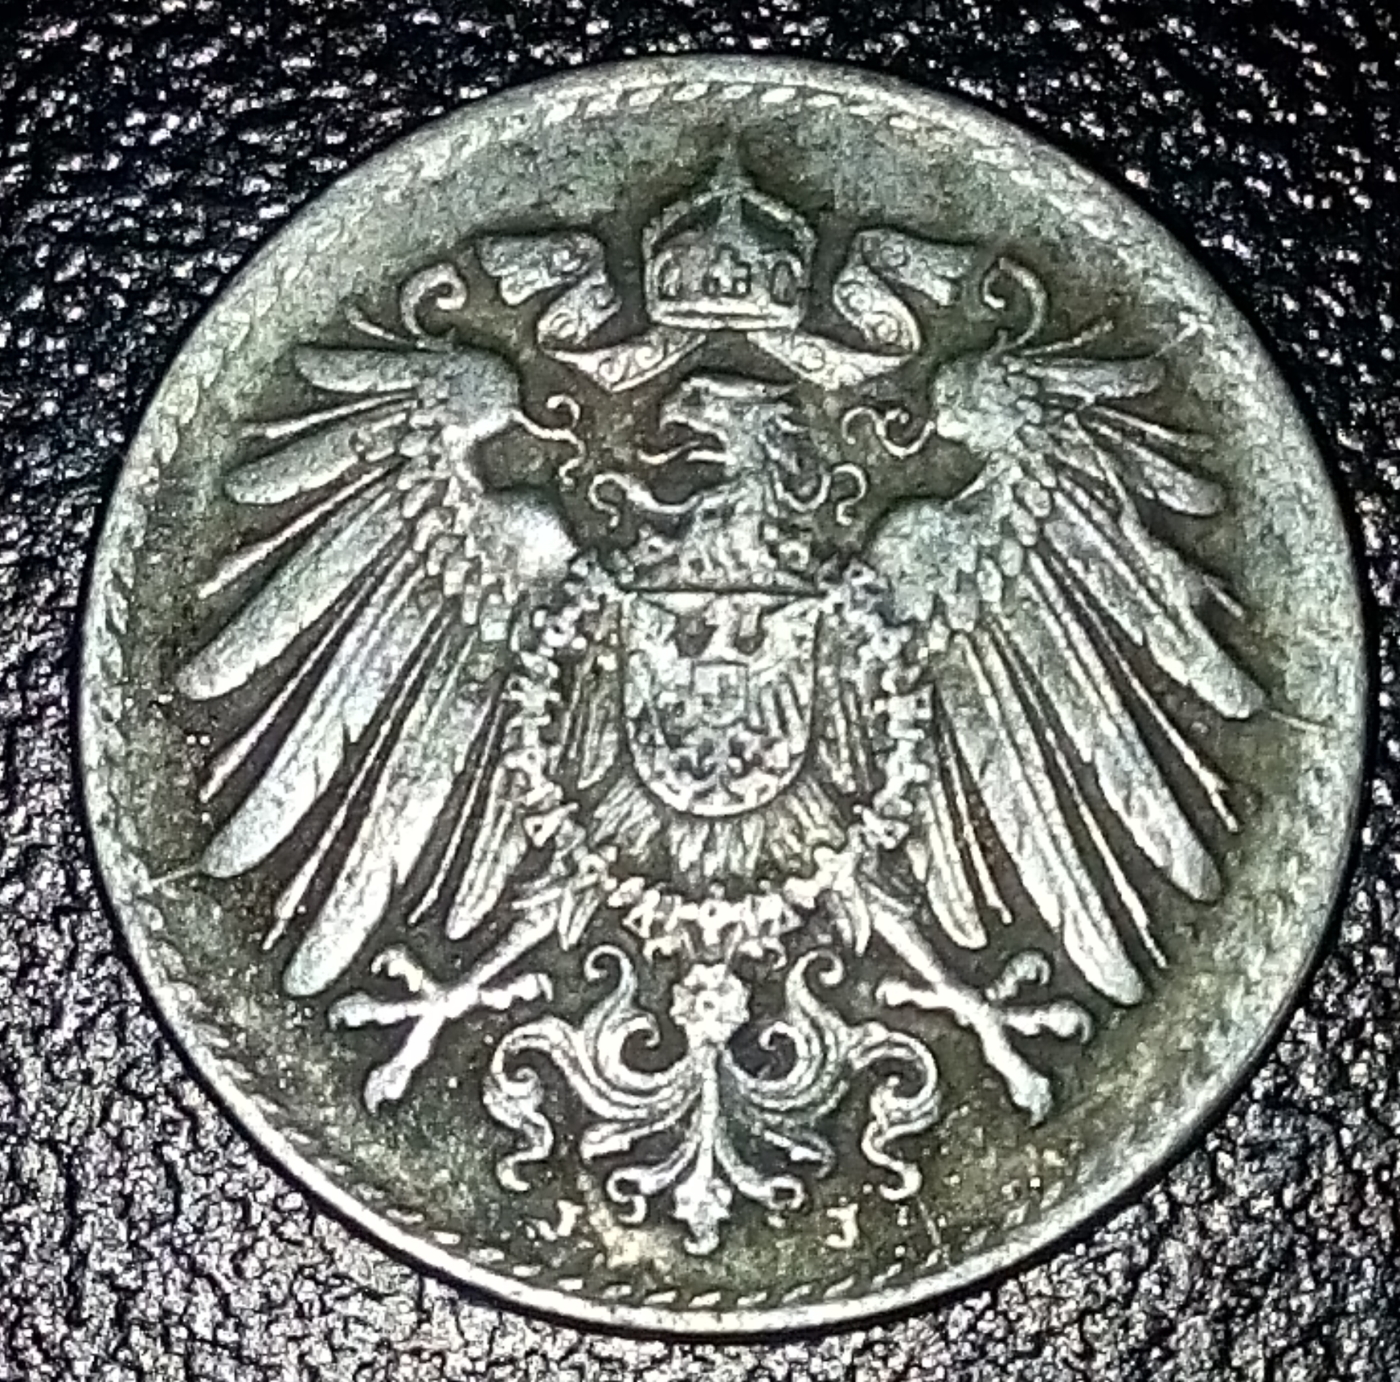 5 Pfennig 1917 J, Wilhelm II (1888-1918) - Germany - Coin - 39717